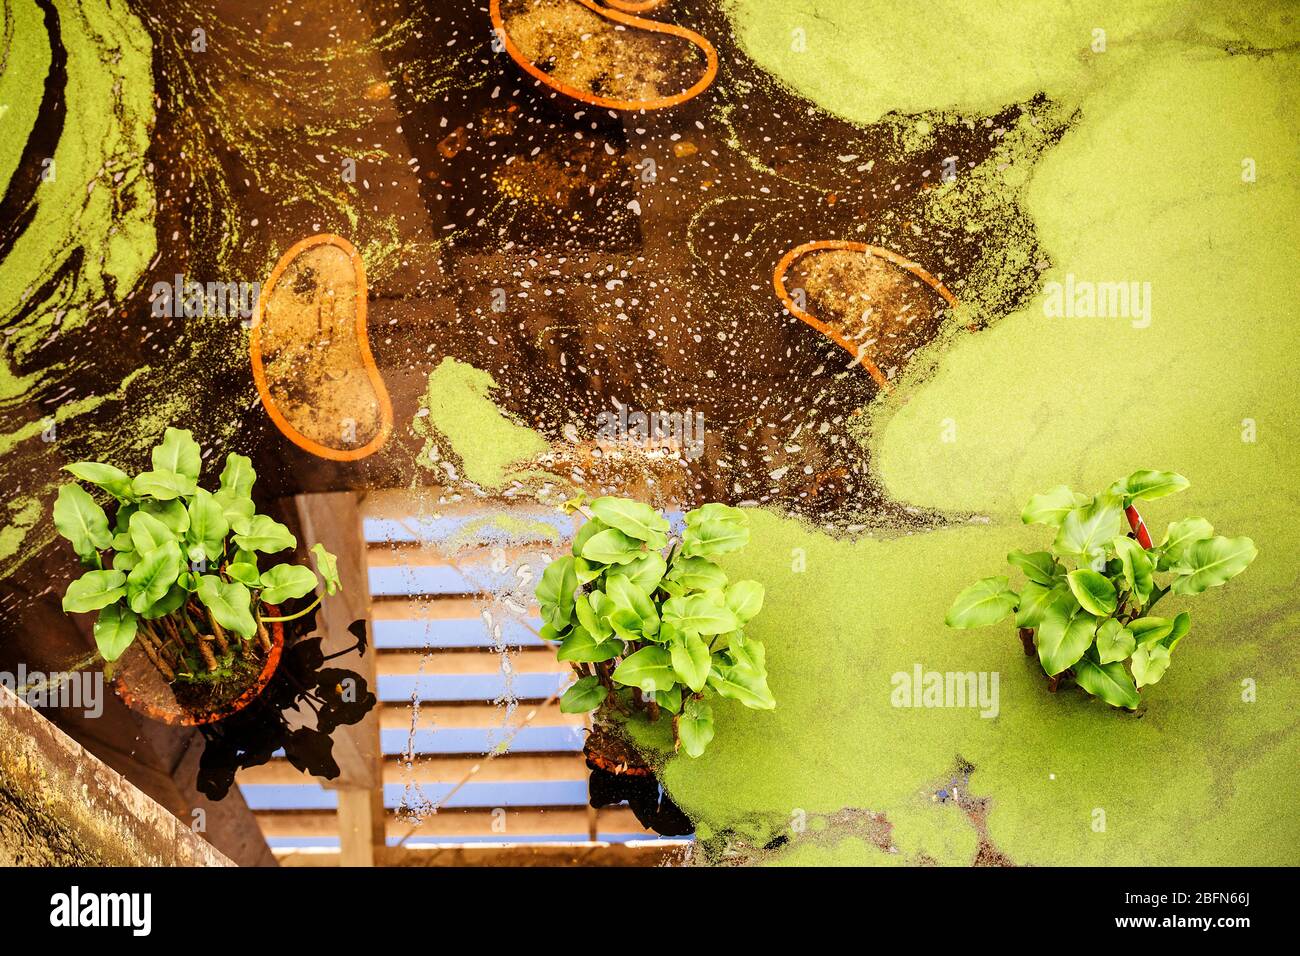 jardin vert avec plantes aquatiques et couverture verte d'algues Banque D'Images